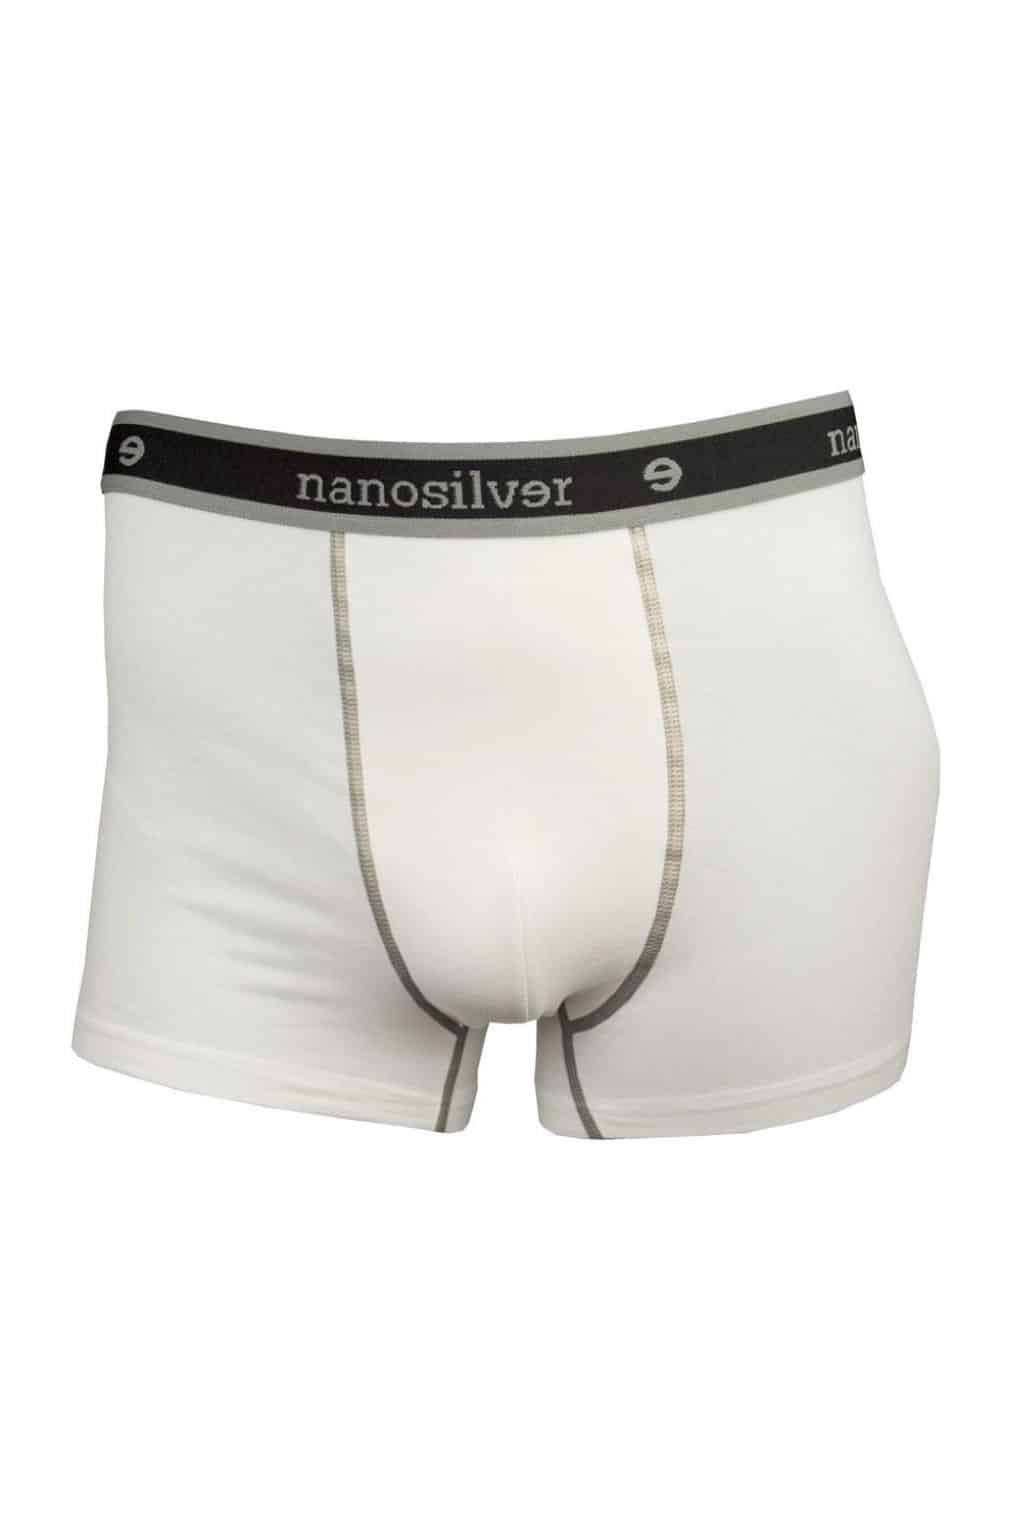 nanosilver® Nano boxerky s gumou nanosilver bez zadního švu bílé Velikost: M